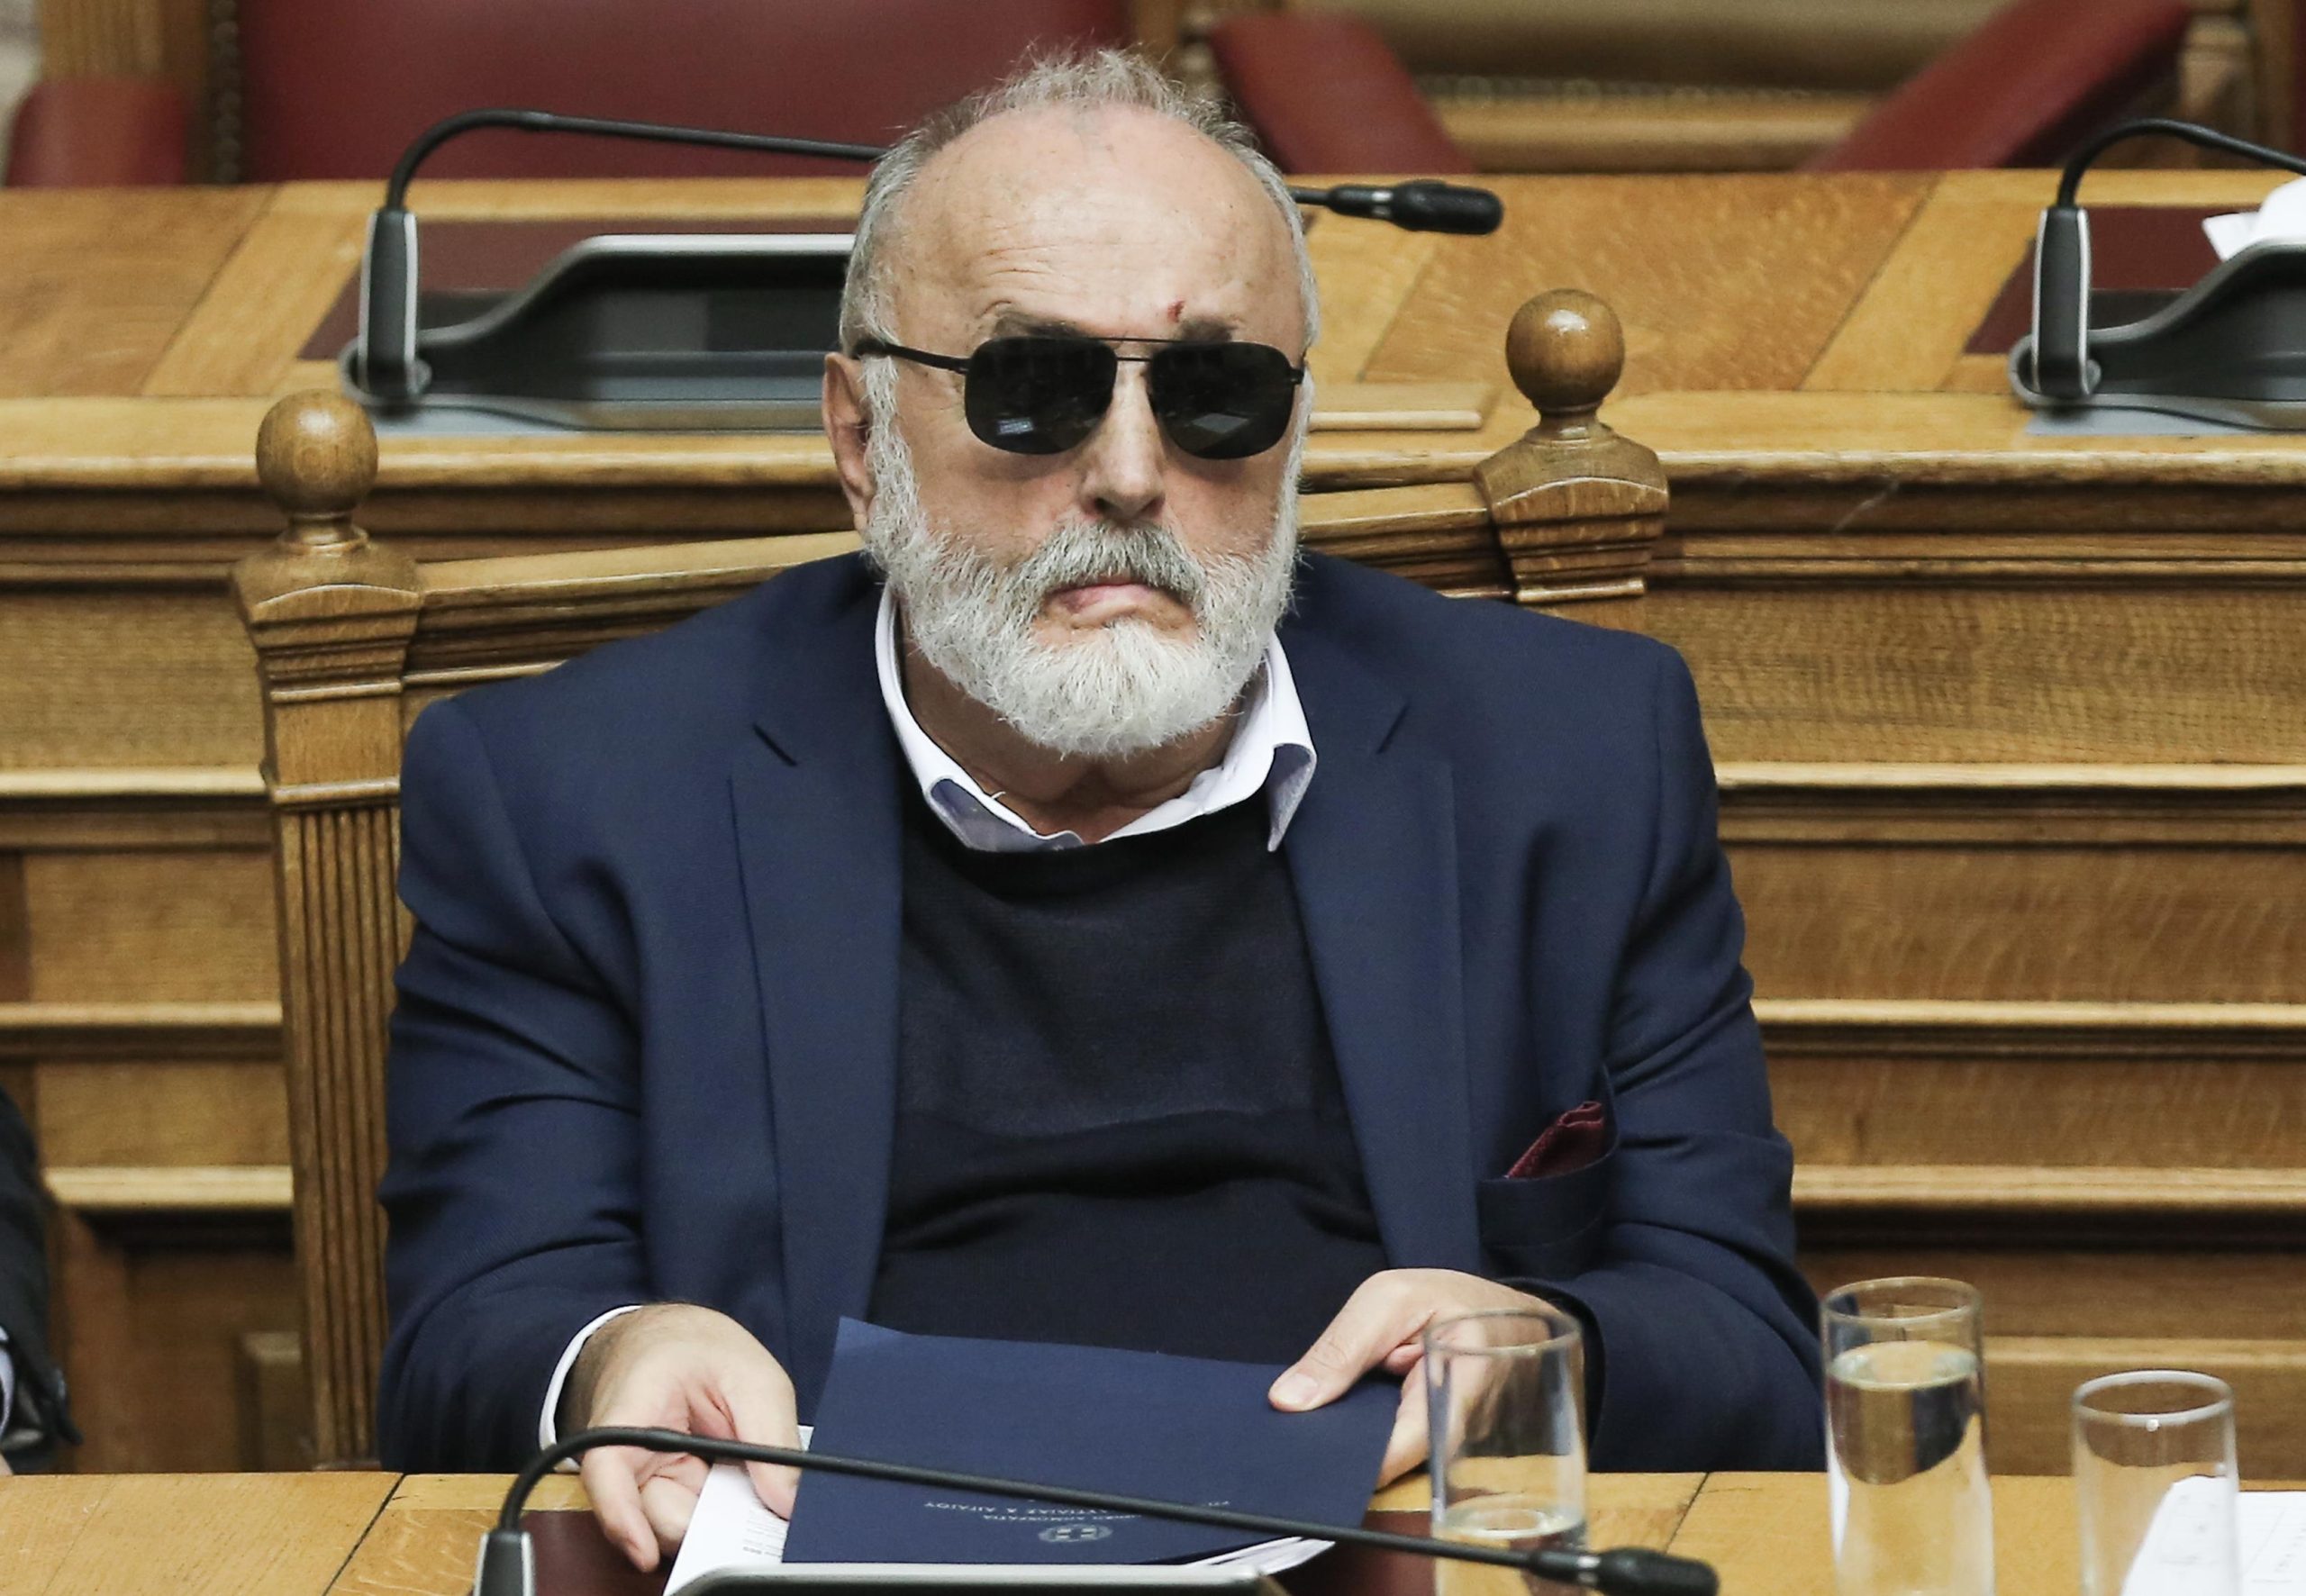 Π.Κουρουμπλής: «Έπρεπε να παραιτηθεί το πολιτικό συμβούλιο του ΣΥΡΙΖΑ μετά την απομάκρυνση του Α.Τσίπρα»